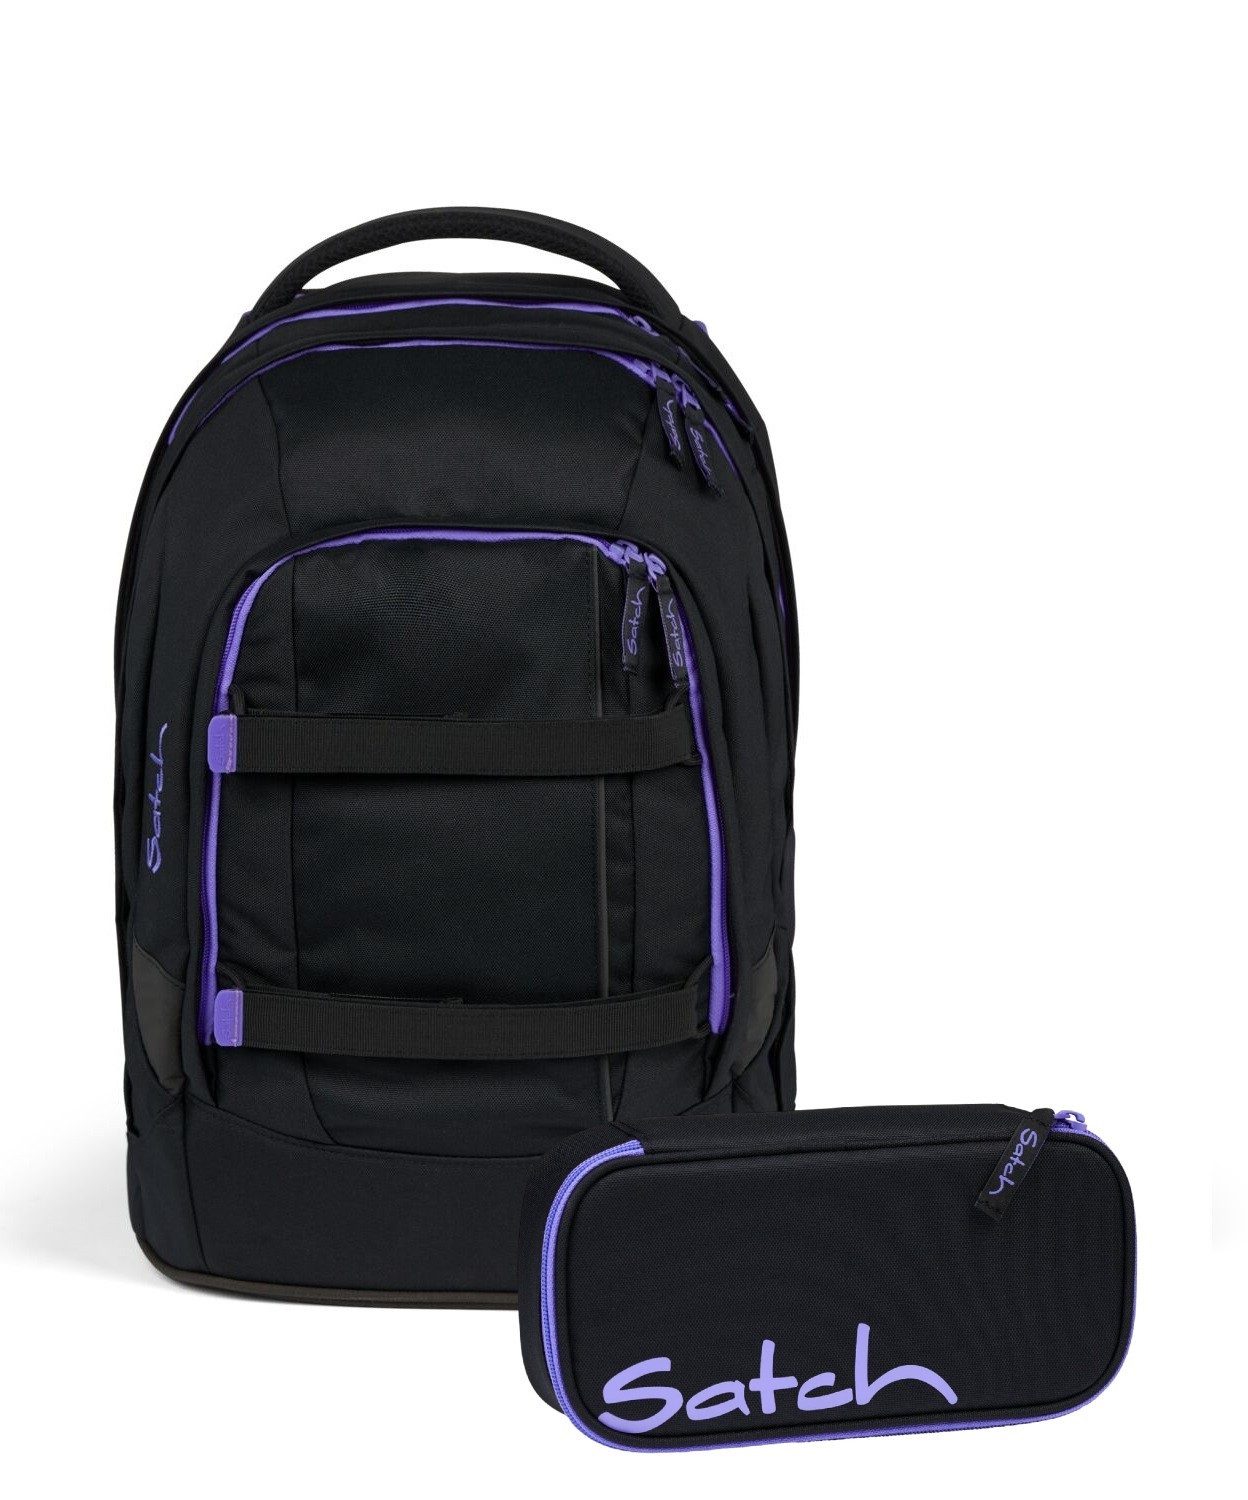 Satch Schulranzen Schulrucksack-Set PACK Purple Phantom 2-teilig (2-teilig), Laptop-Fach, Your-Size-System, Schulranzen